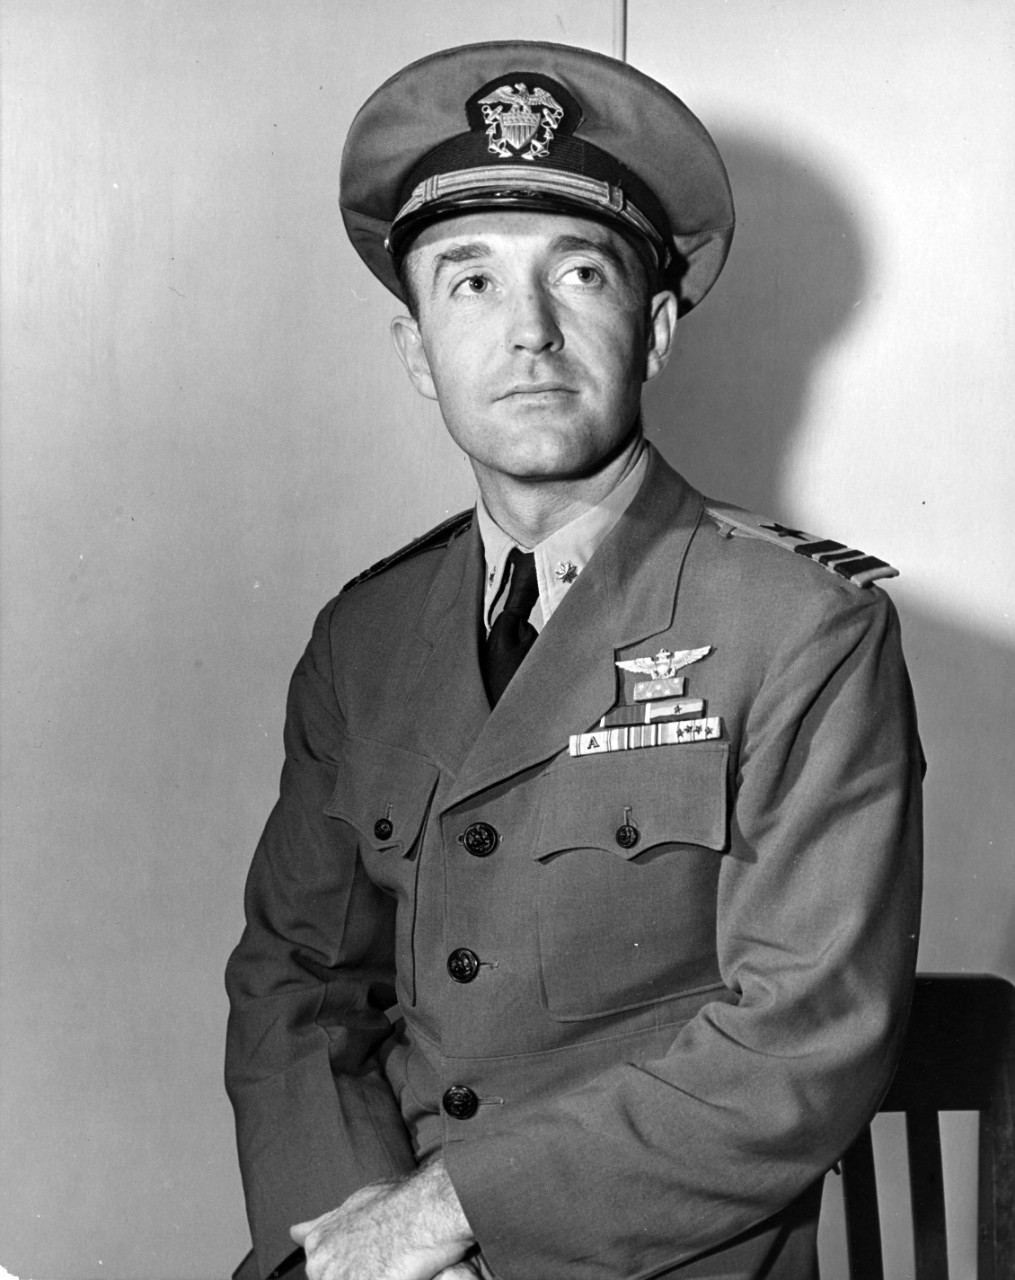 Lieutenant Commander William E. Hall, USNR